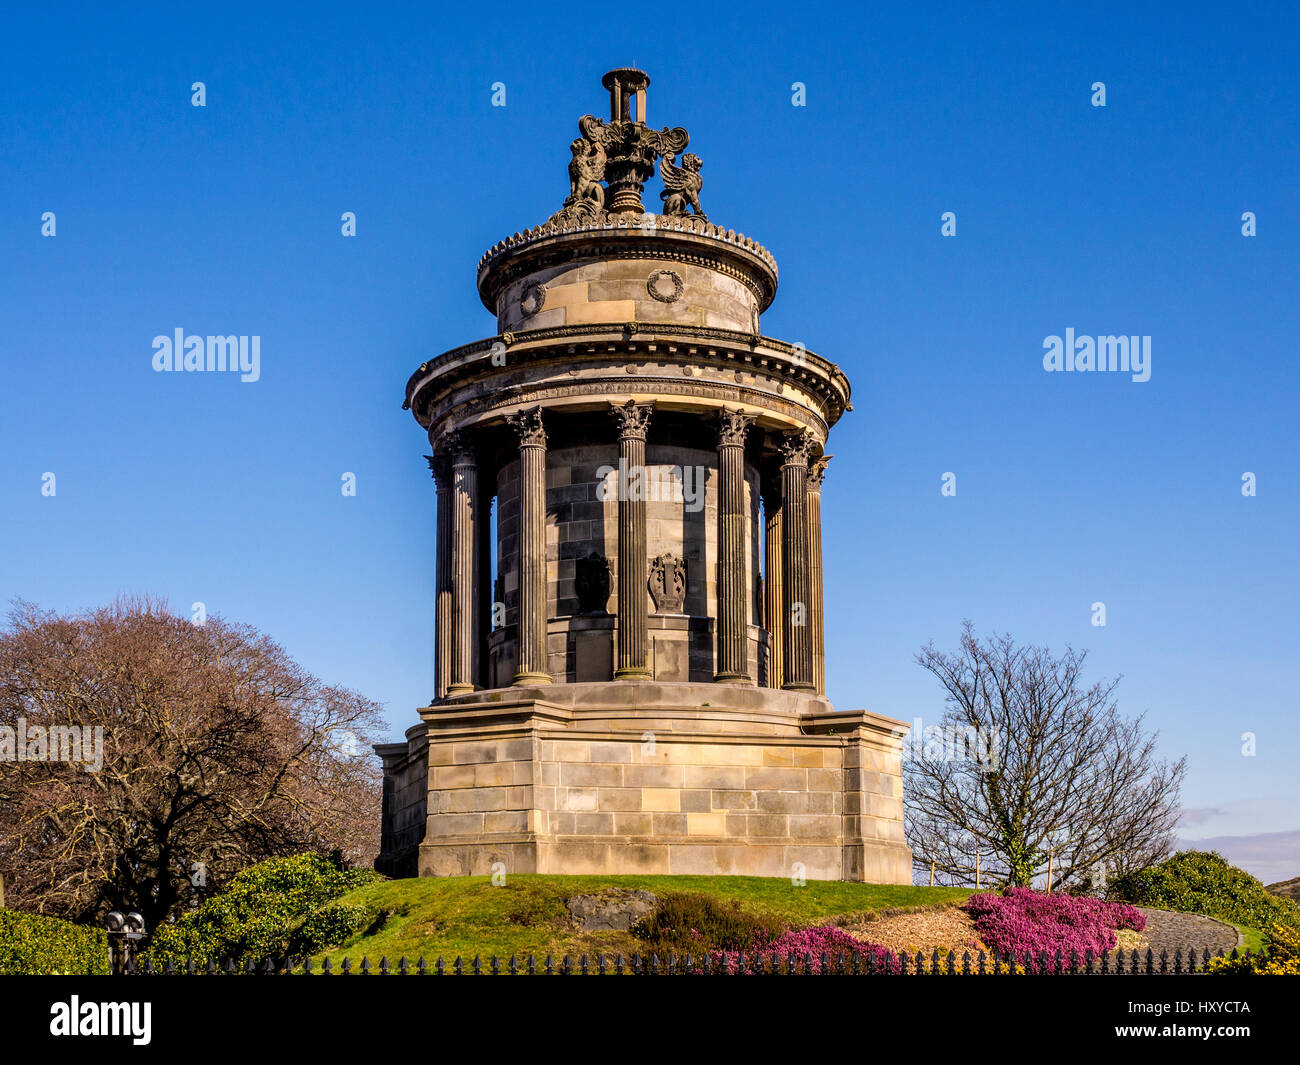 Il Monumento di Burns. Un piccolo tempio circolare in stile Neo-Greek tipico di epoca georgiana Edinburgh, costruito in onore di Robert Burns. Foto Stock